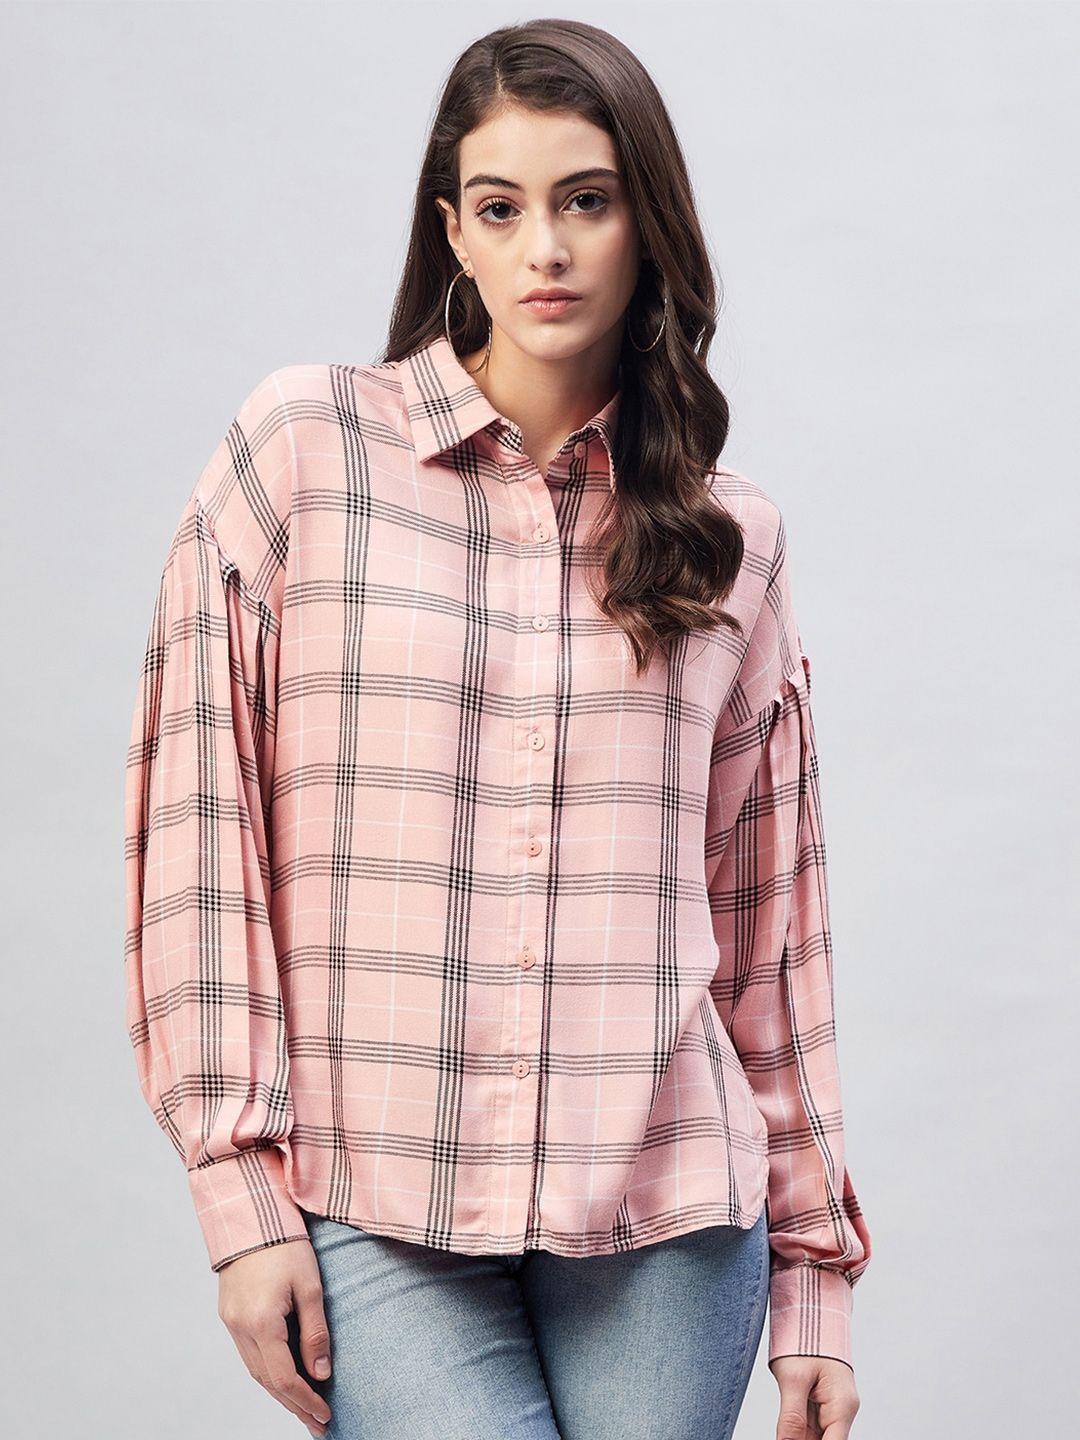 marie-claire-women-tartan-checks-checked-casual-shirt